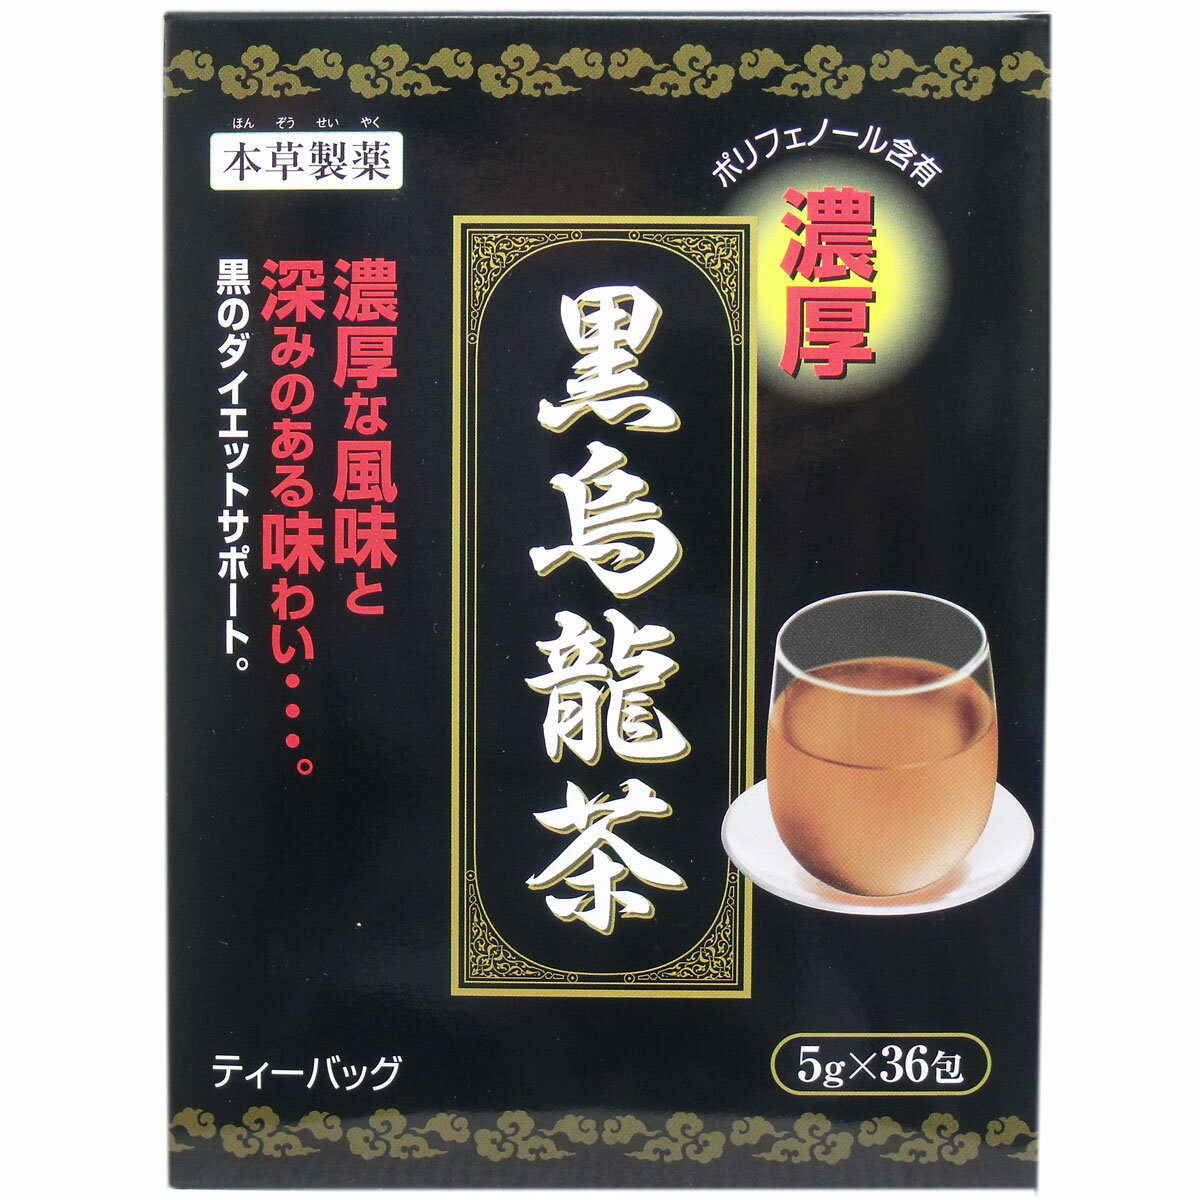 烏龍茶 ティーバッグ 黒烏龍茶 濃厚 5g×36包 黒のダイエットサポート！烏龍茶に黒茶をブレンドし、焙煎した黒烏龍茶です。